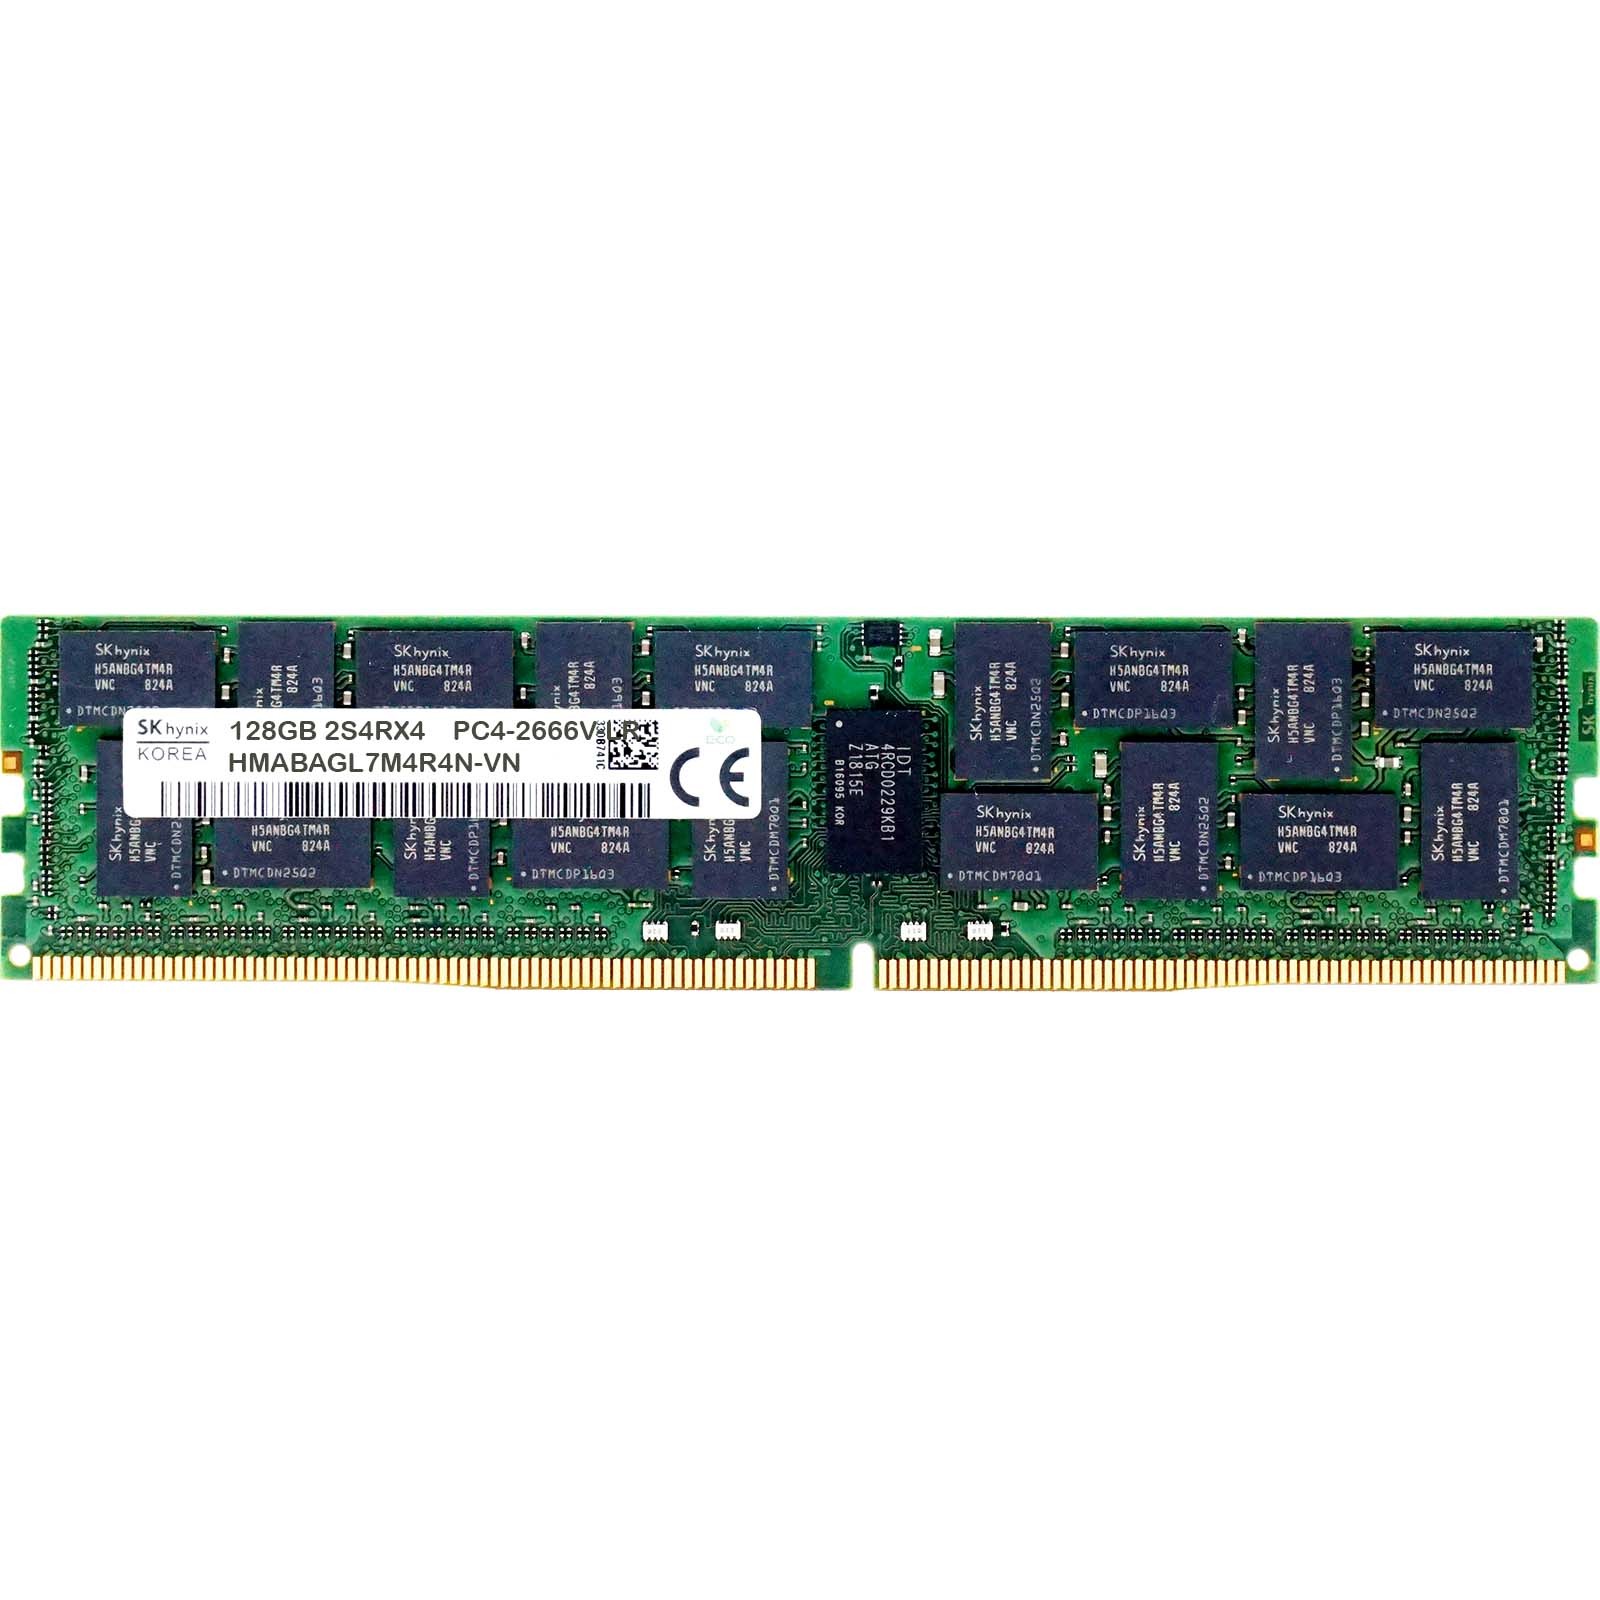 Hynix (HMABAGL7M4R4N-VN) - 128GB PC4-21300V-LR (2S4RX4, DDR4-2666MHz) RAM